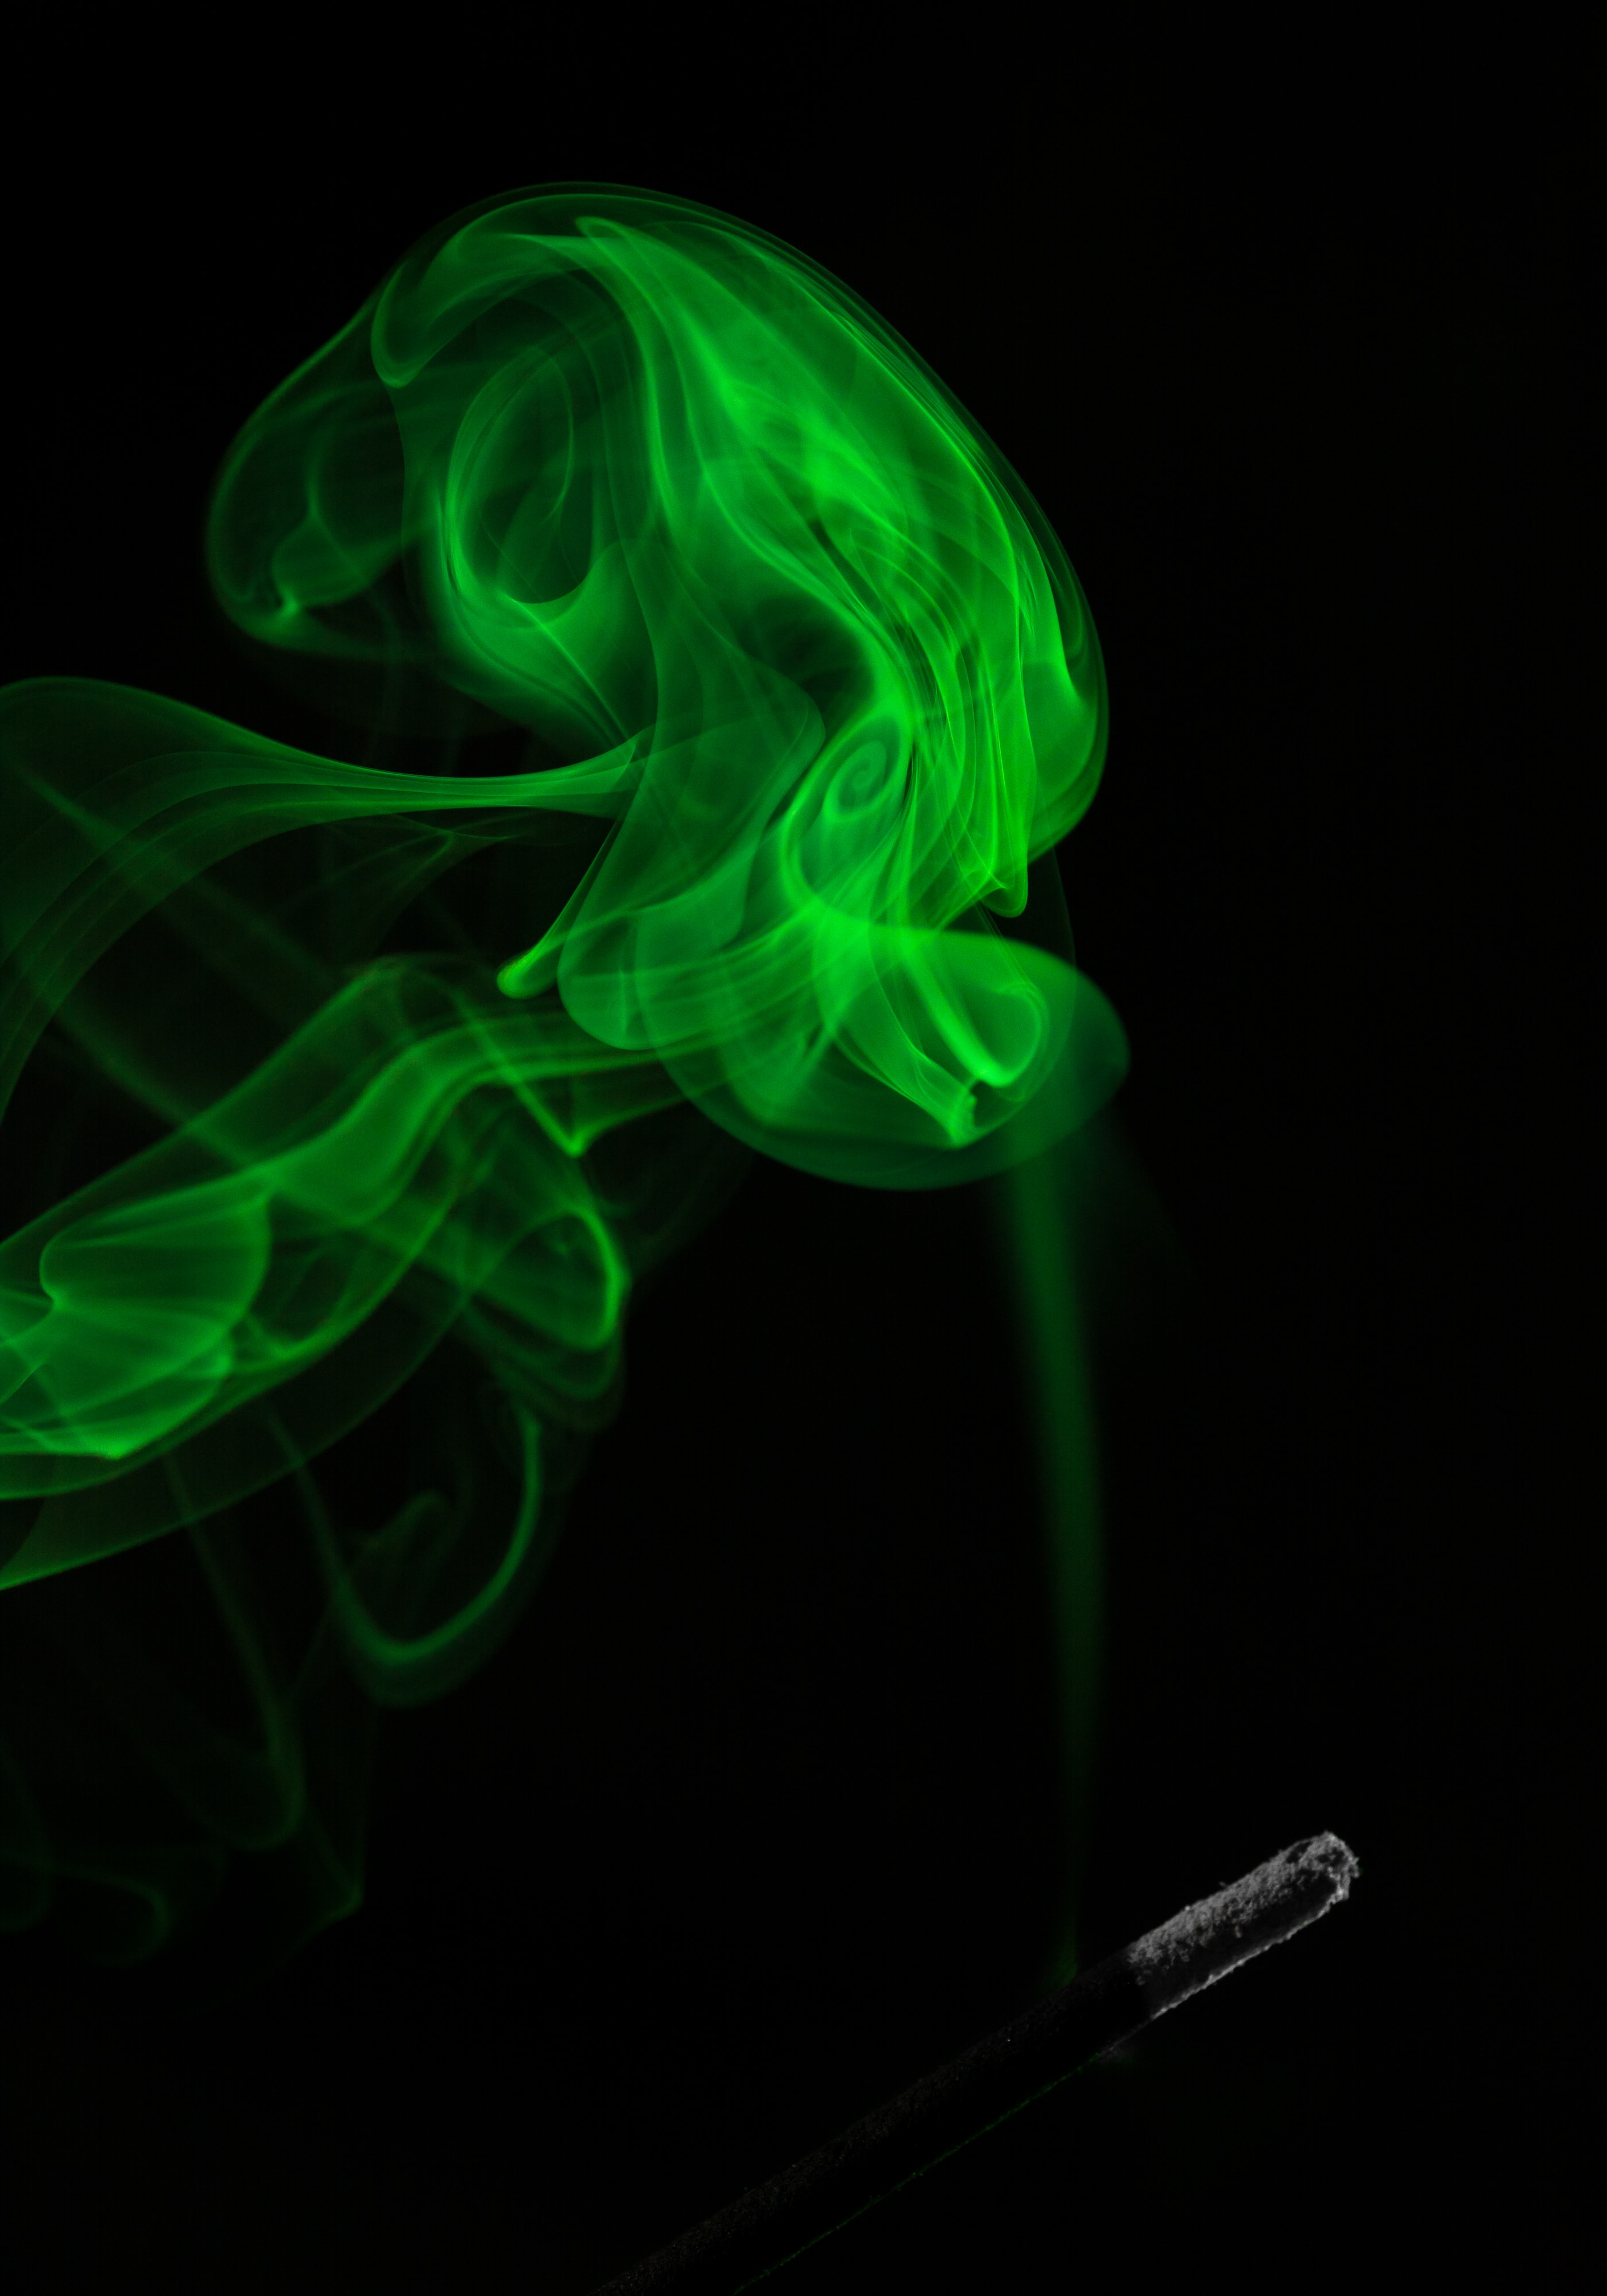 煙の壁紙,緑,煙,光,視覚効果照明